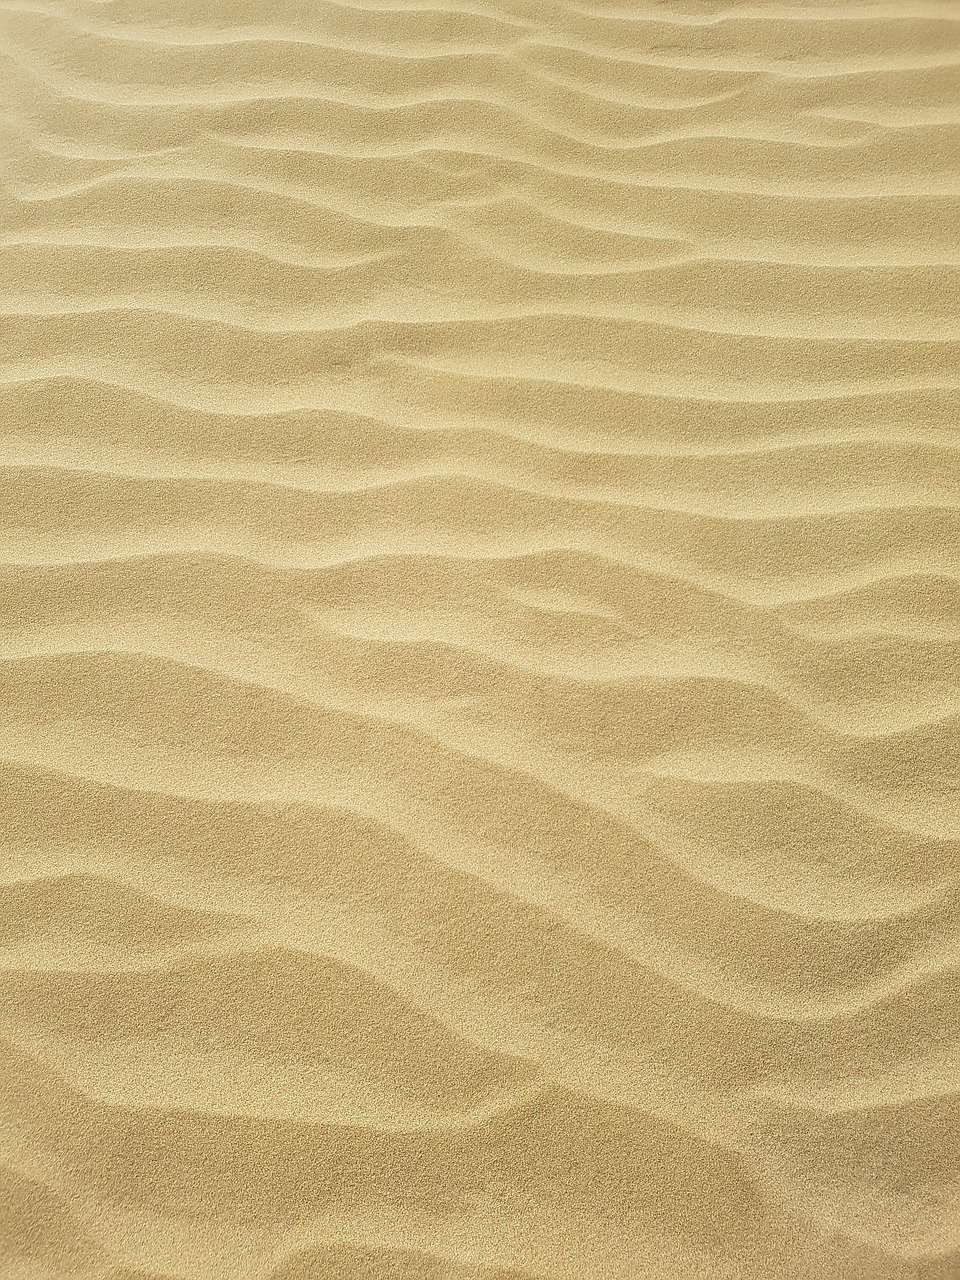 Цвет песка